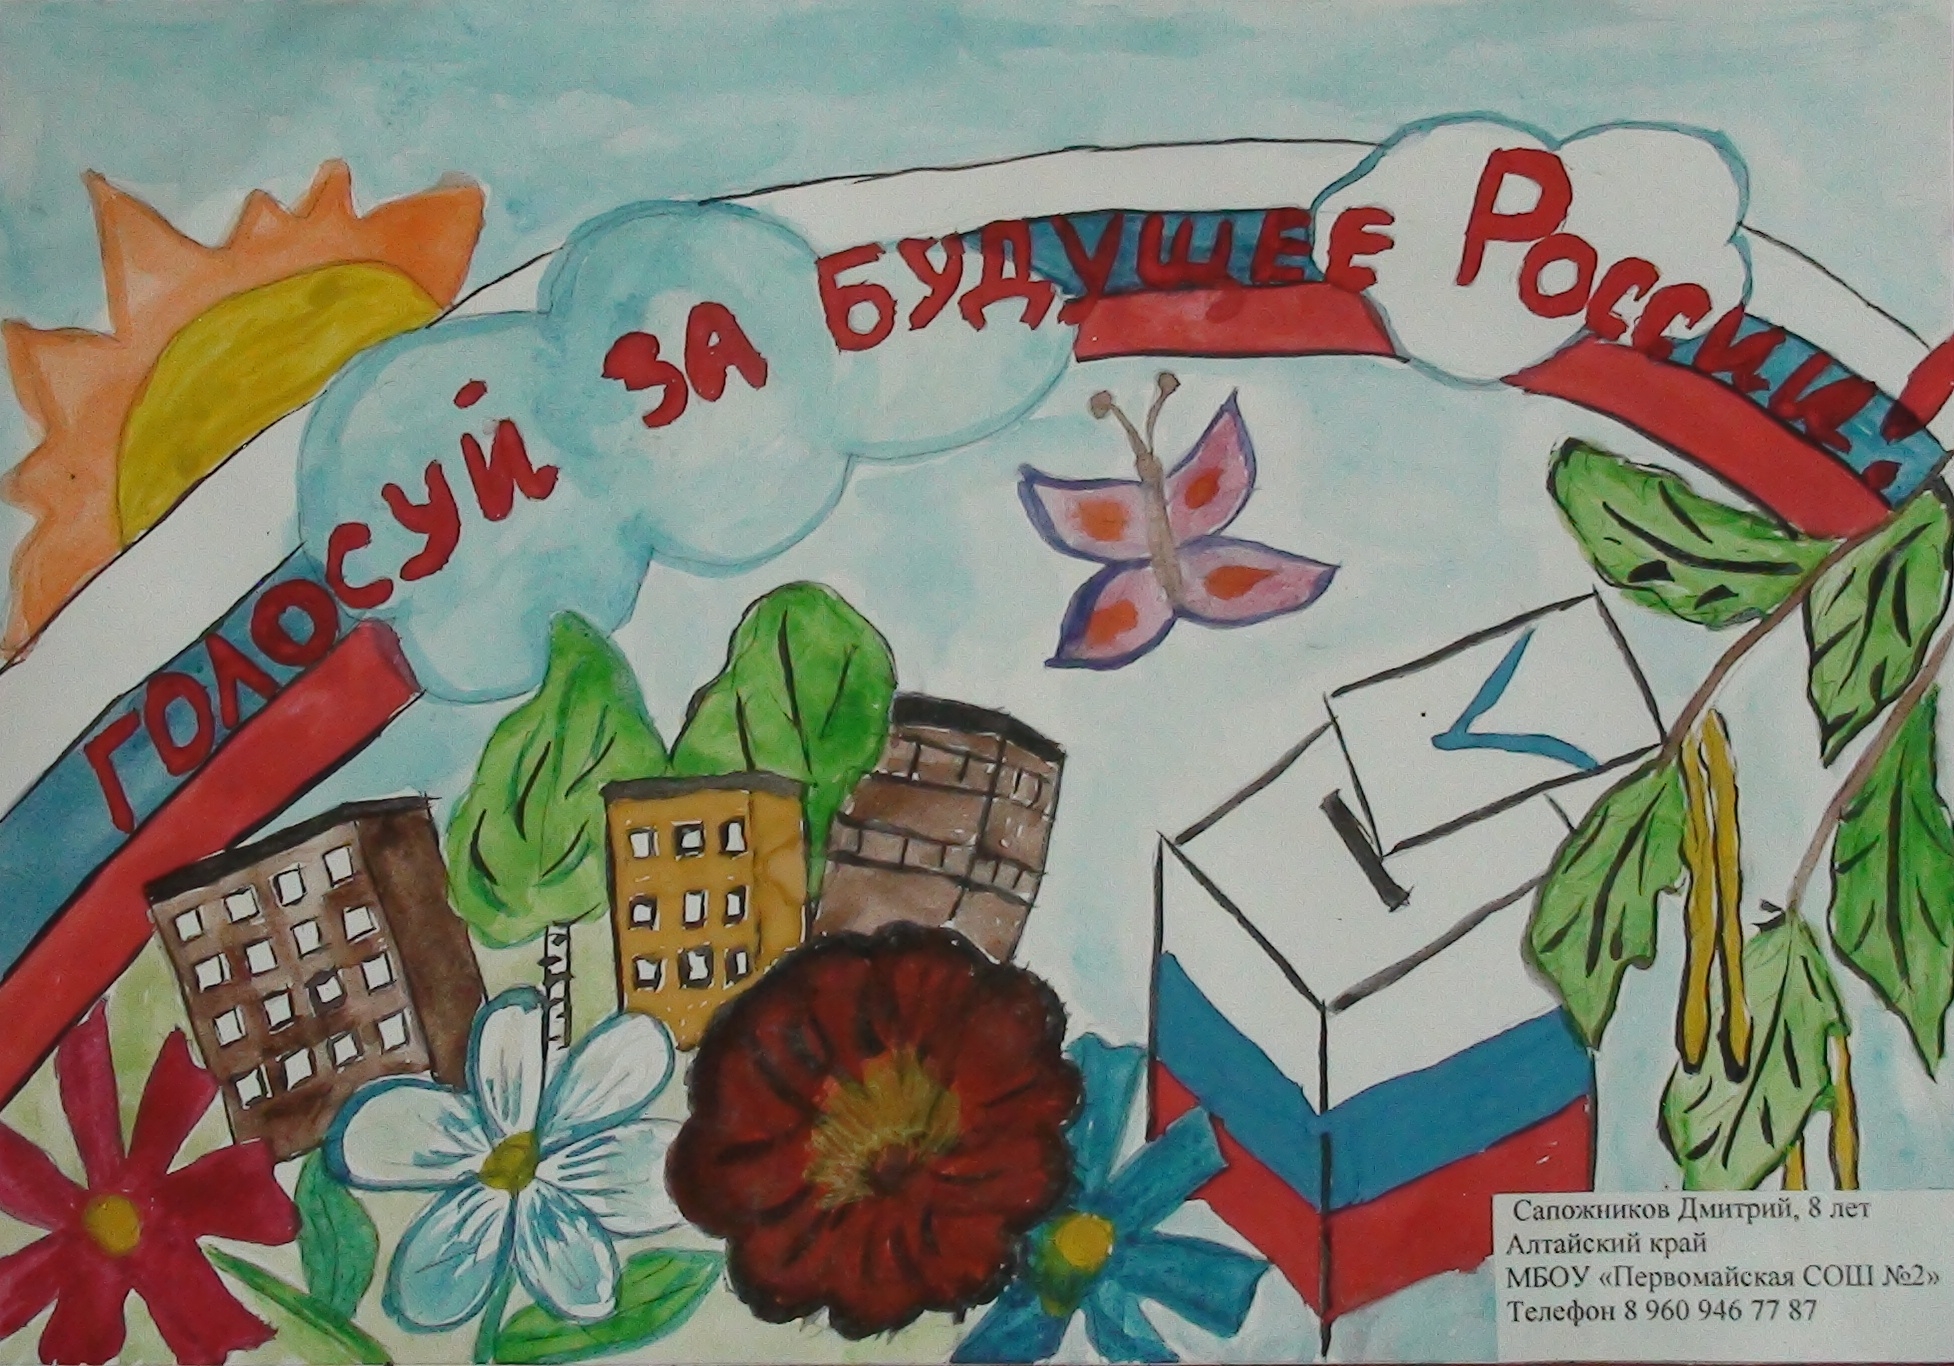 Будущее России плакат